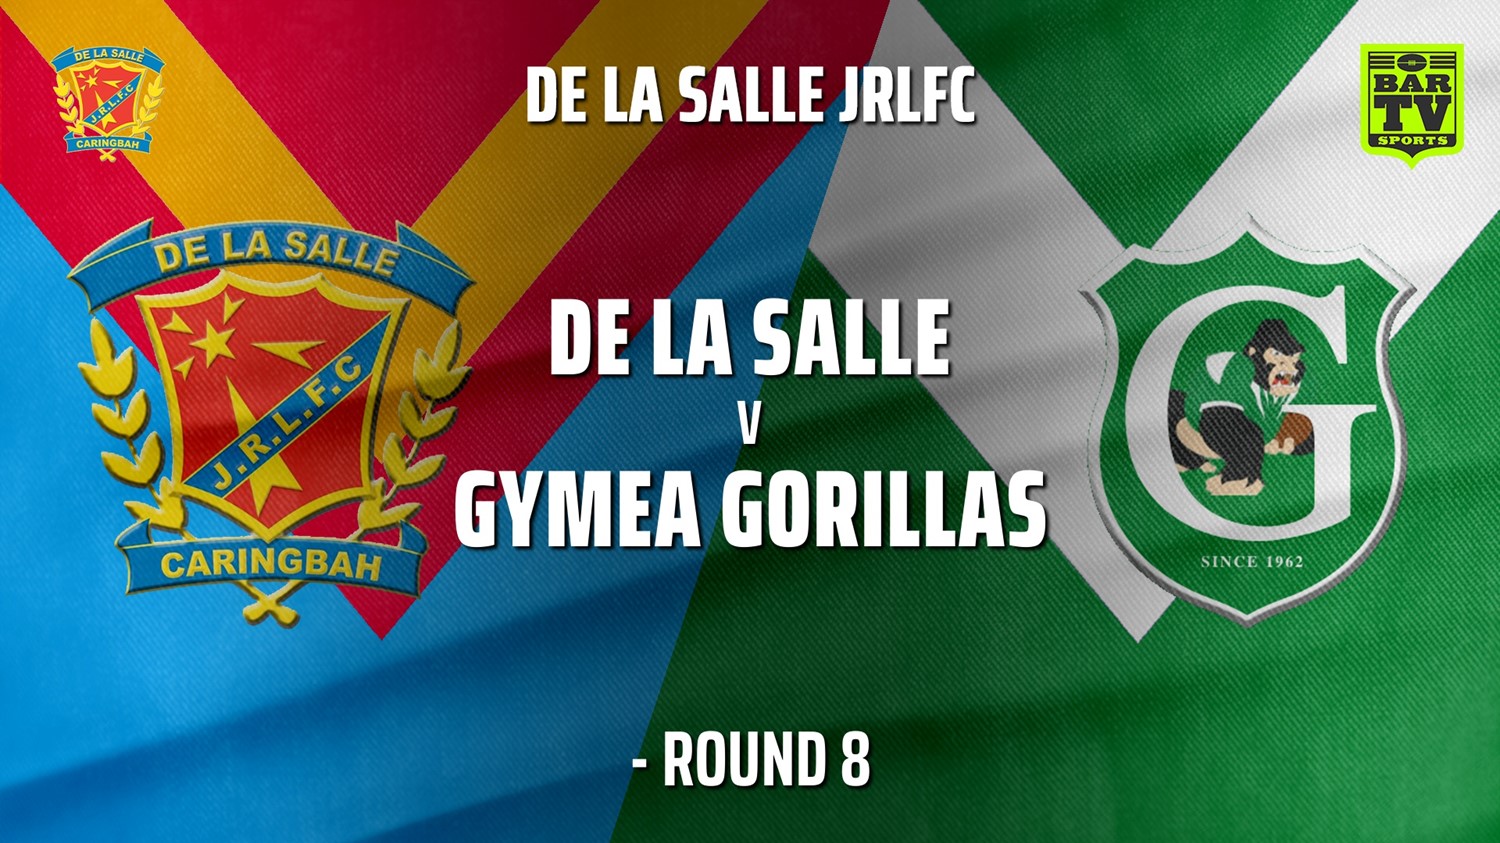 210626-De La Salle - Under 8 Gold Round 8 - De La Salle v Gymea Gorillas Slate Image